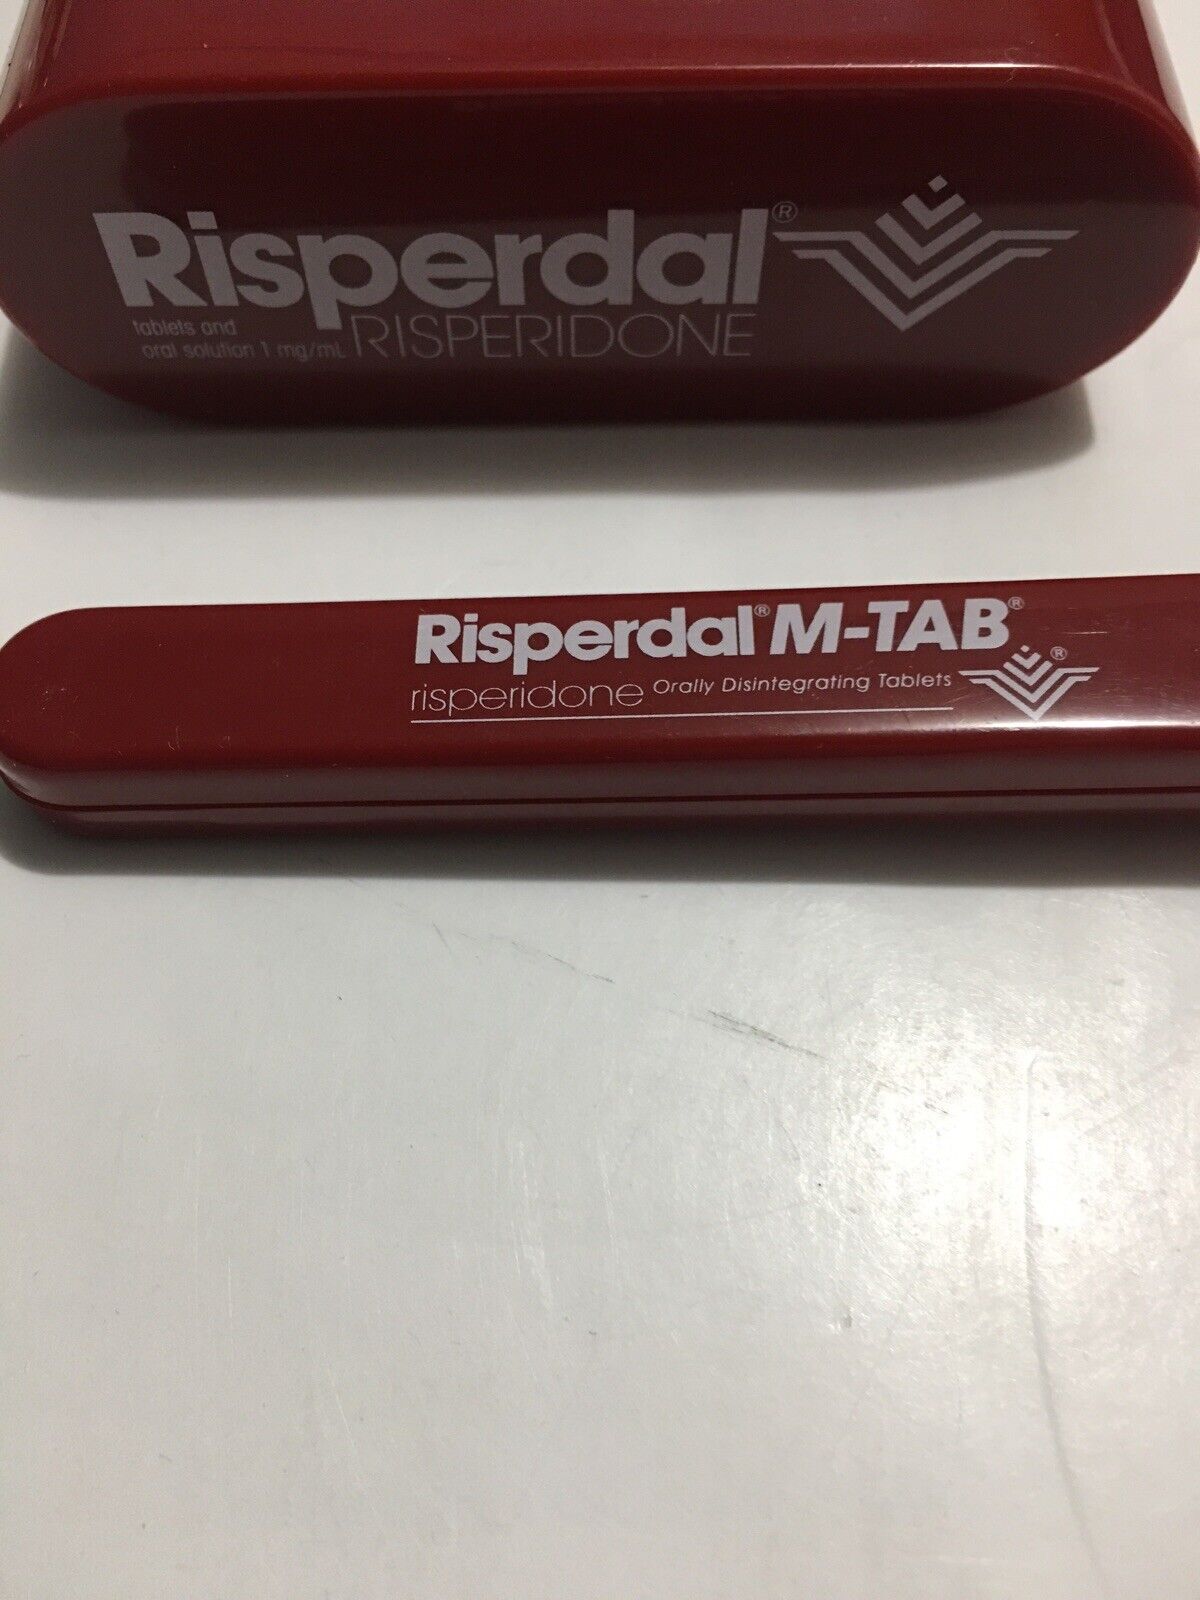 Risperdal New PAPERCLIP HOLDER Pharmaceutical DRUG REP PROMO W/ Staple Puller